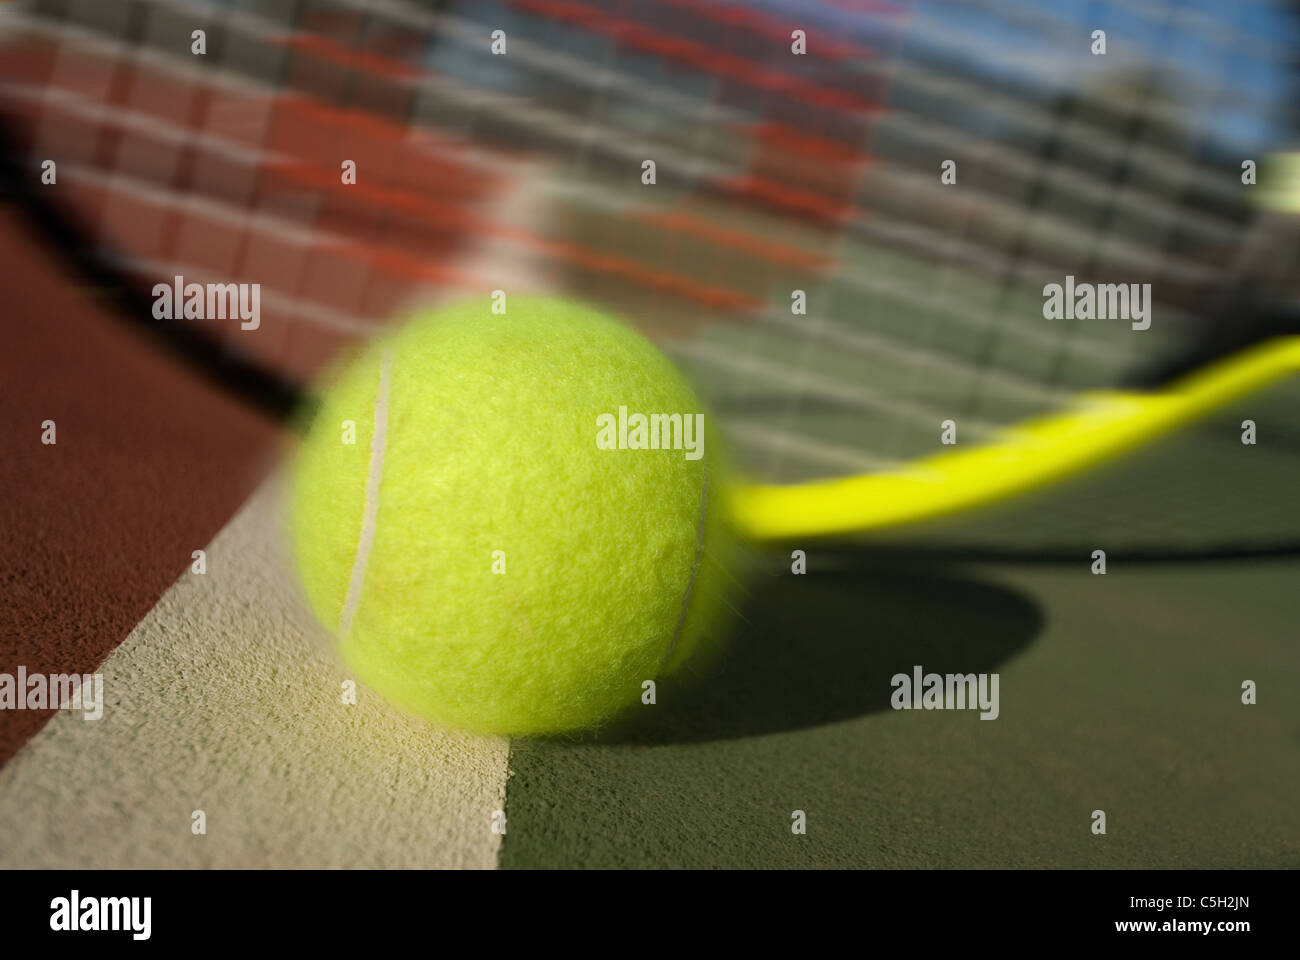 Une image illustrant le concept de tennis, y compris la cour, raquettes, balles et bleu à l'extérieur. Banque D'Images